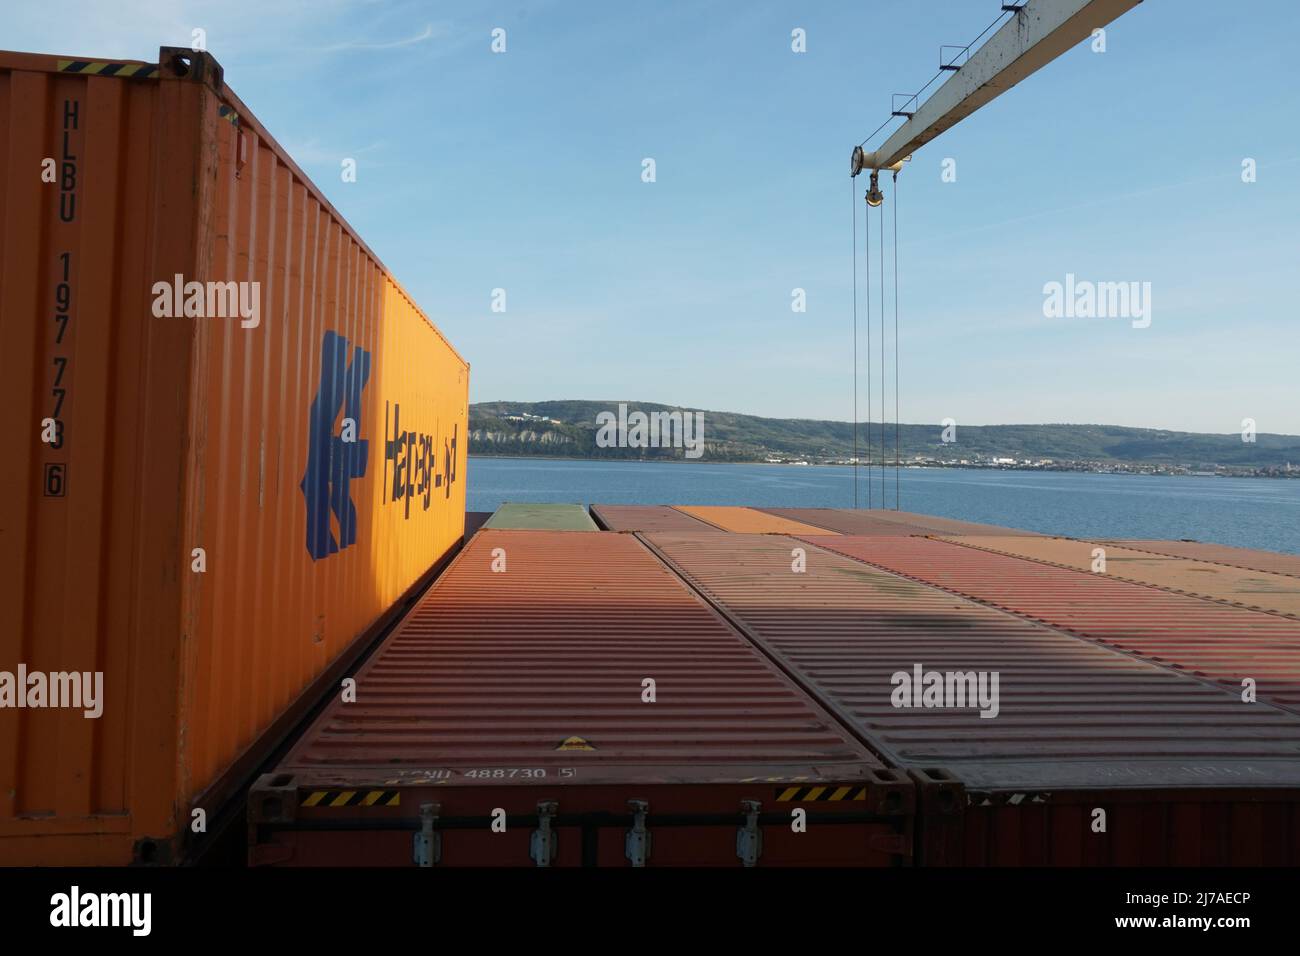 Oranger Container von Hapag Lloyd Reederei wird auf der obersten Ebene im hinteren Teil des Containerschiffes mit Kränen verladen verlassen Hafen von Koper Slowenien. Stockfoto